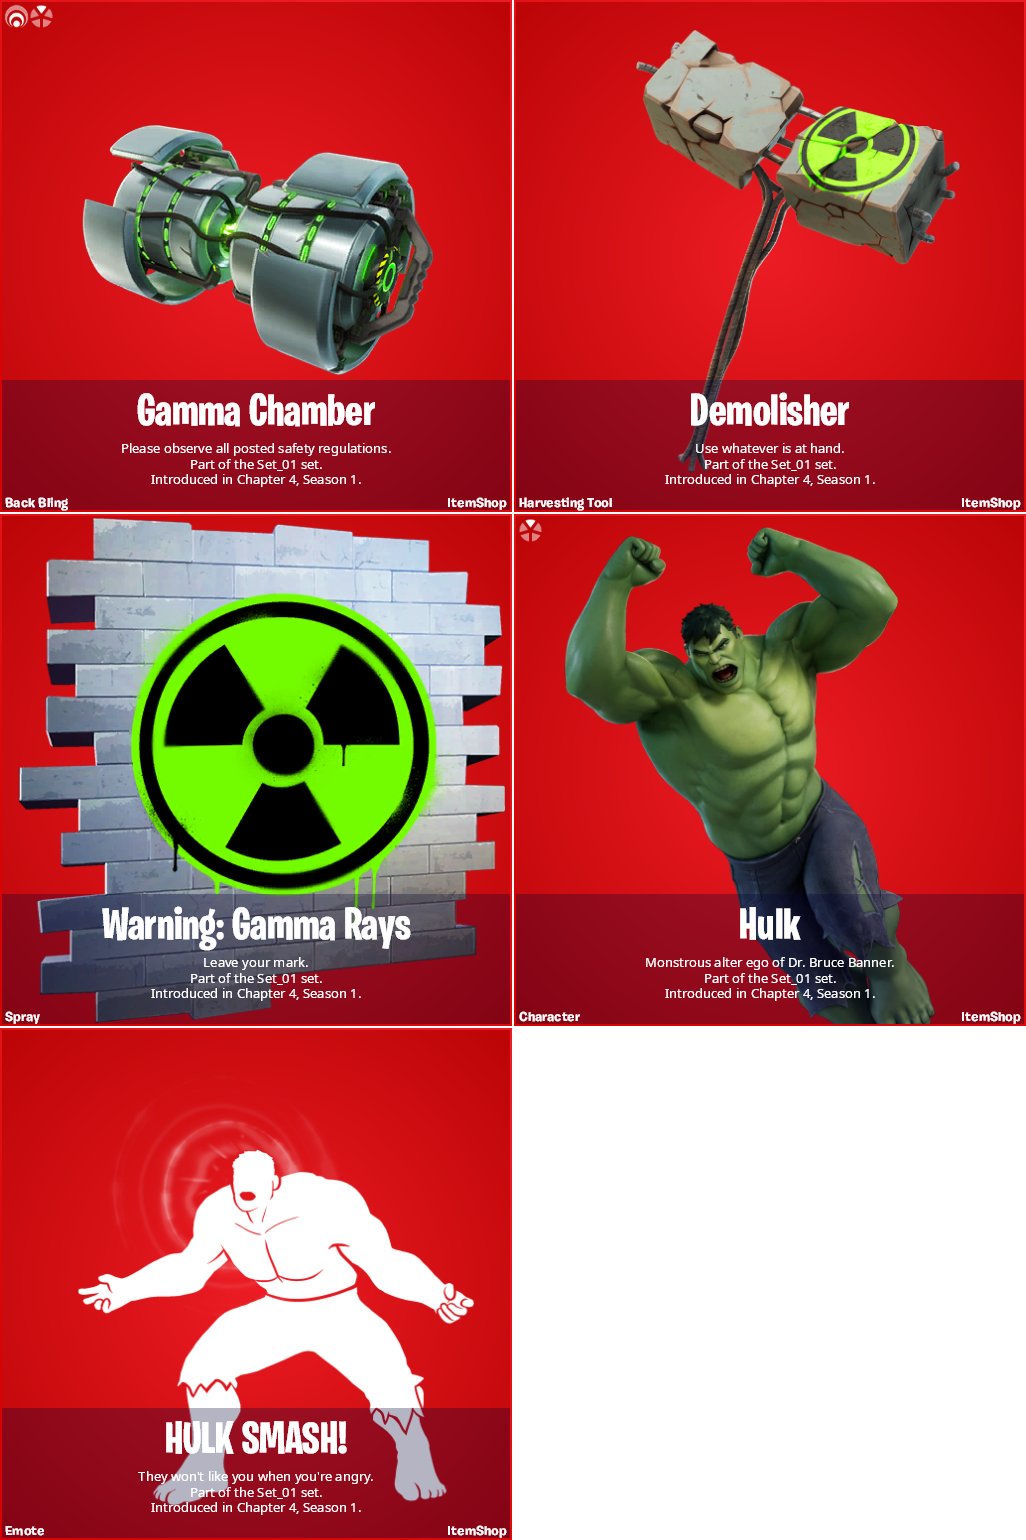 Hulk Fortnite wallpaper